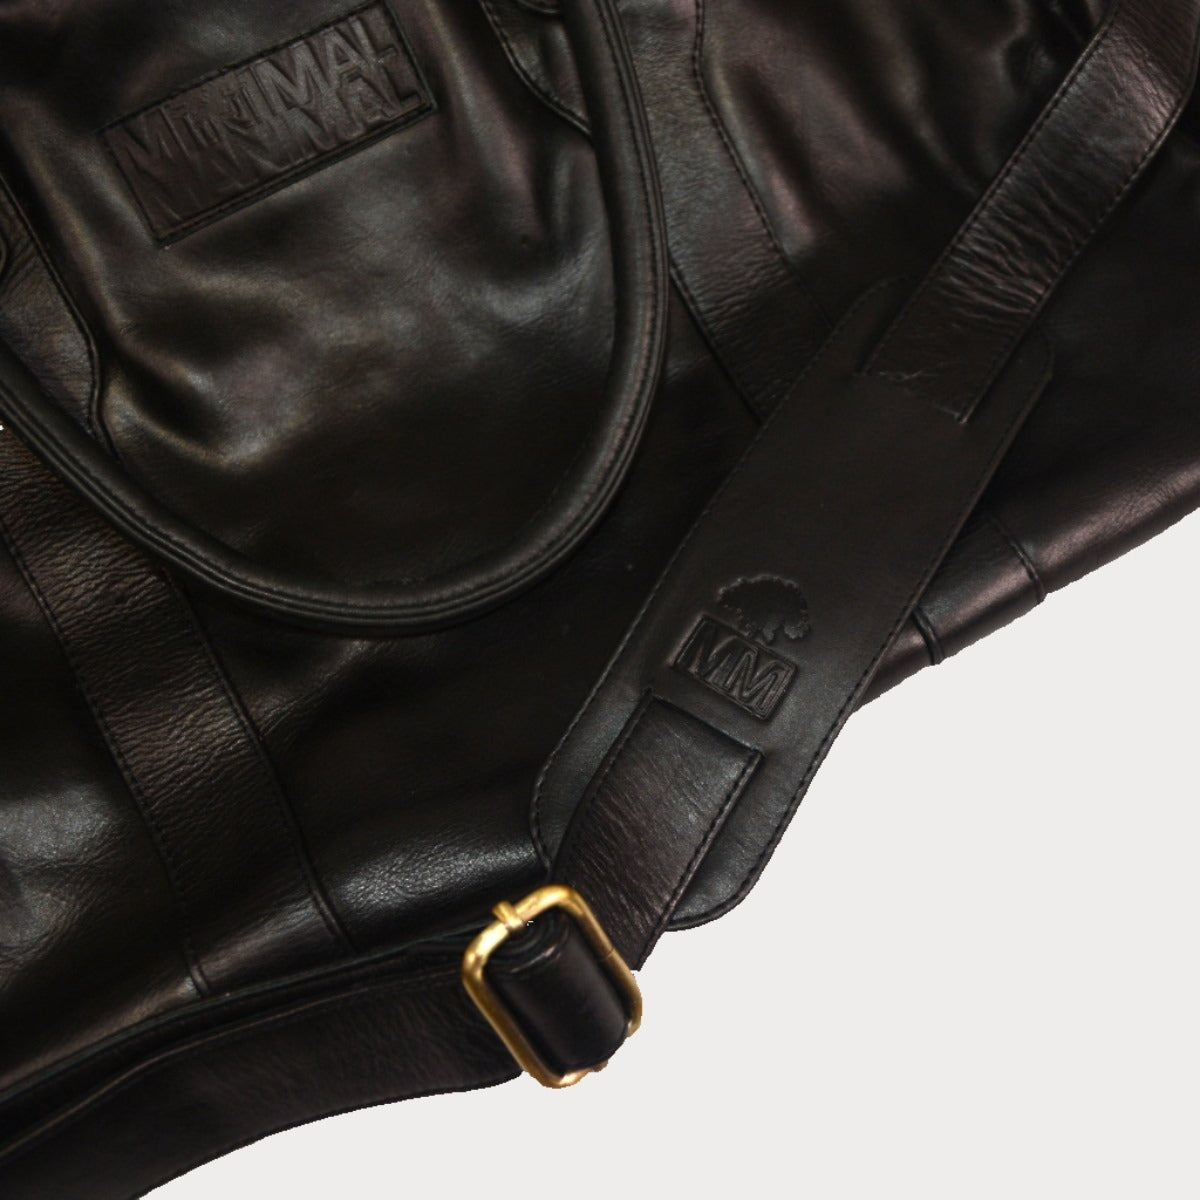 Leather Weekender Duffel Bag - Onyx - Minimal Manimal